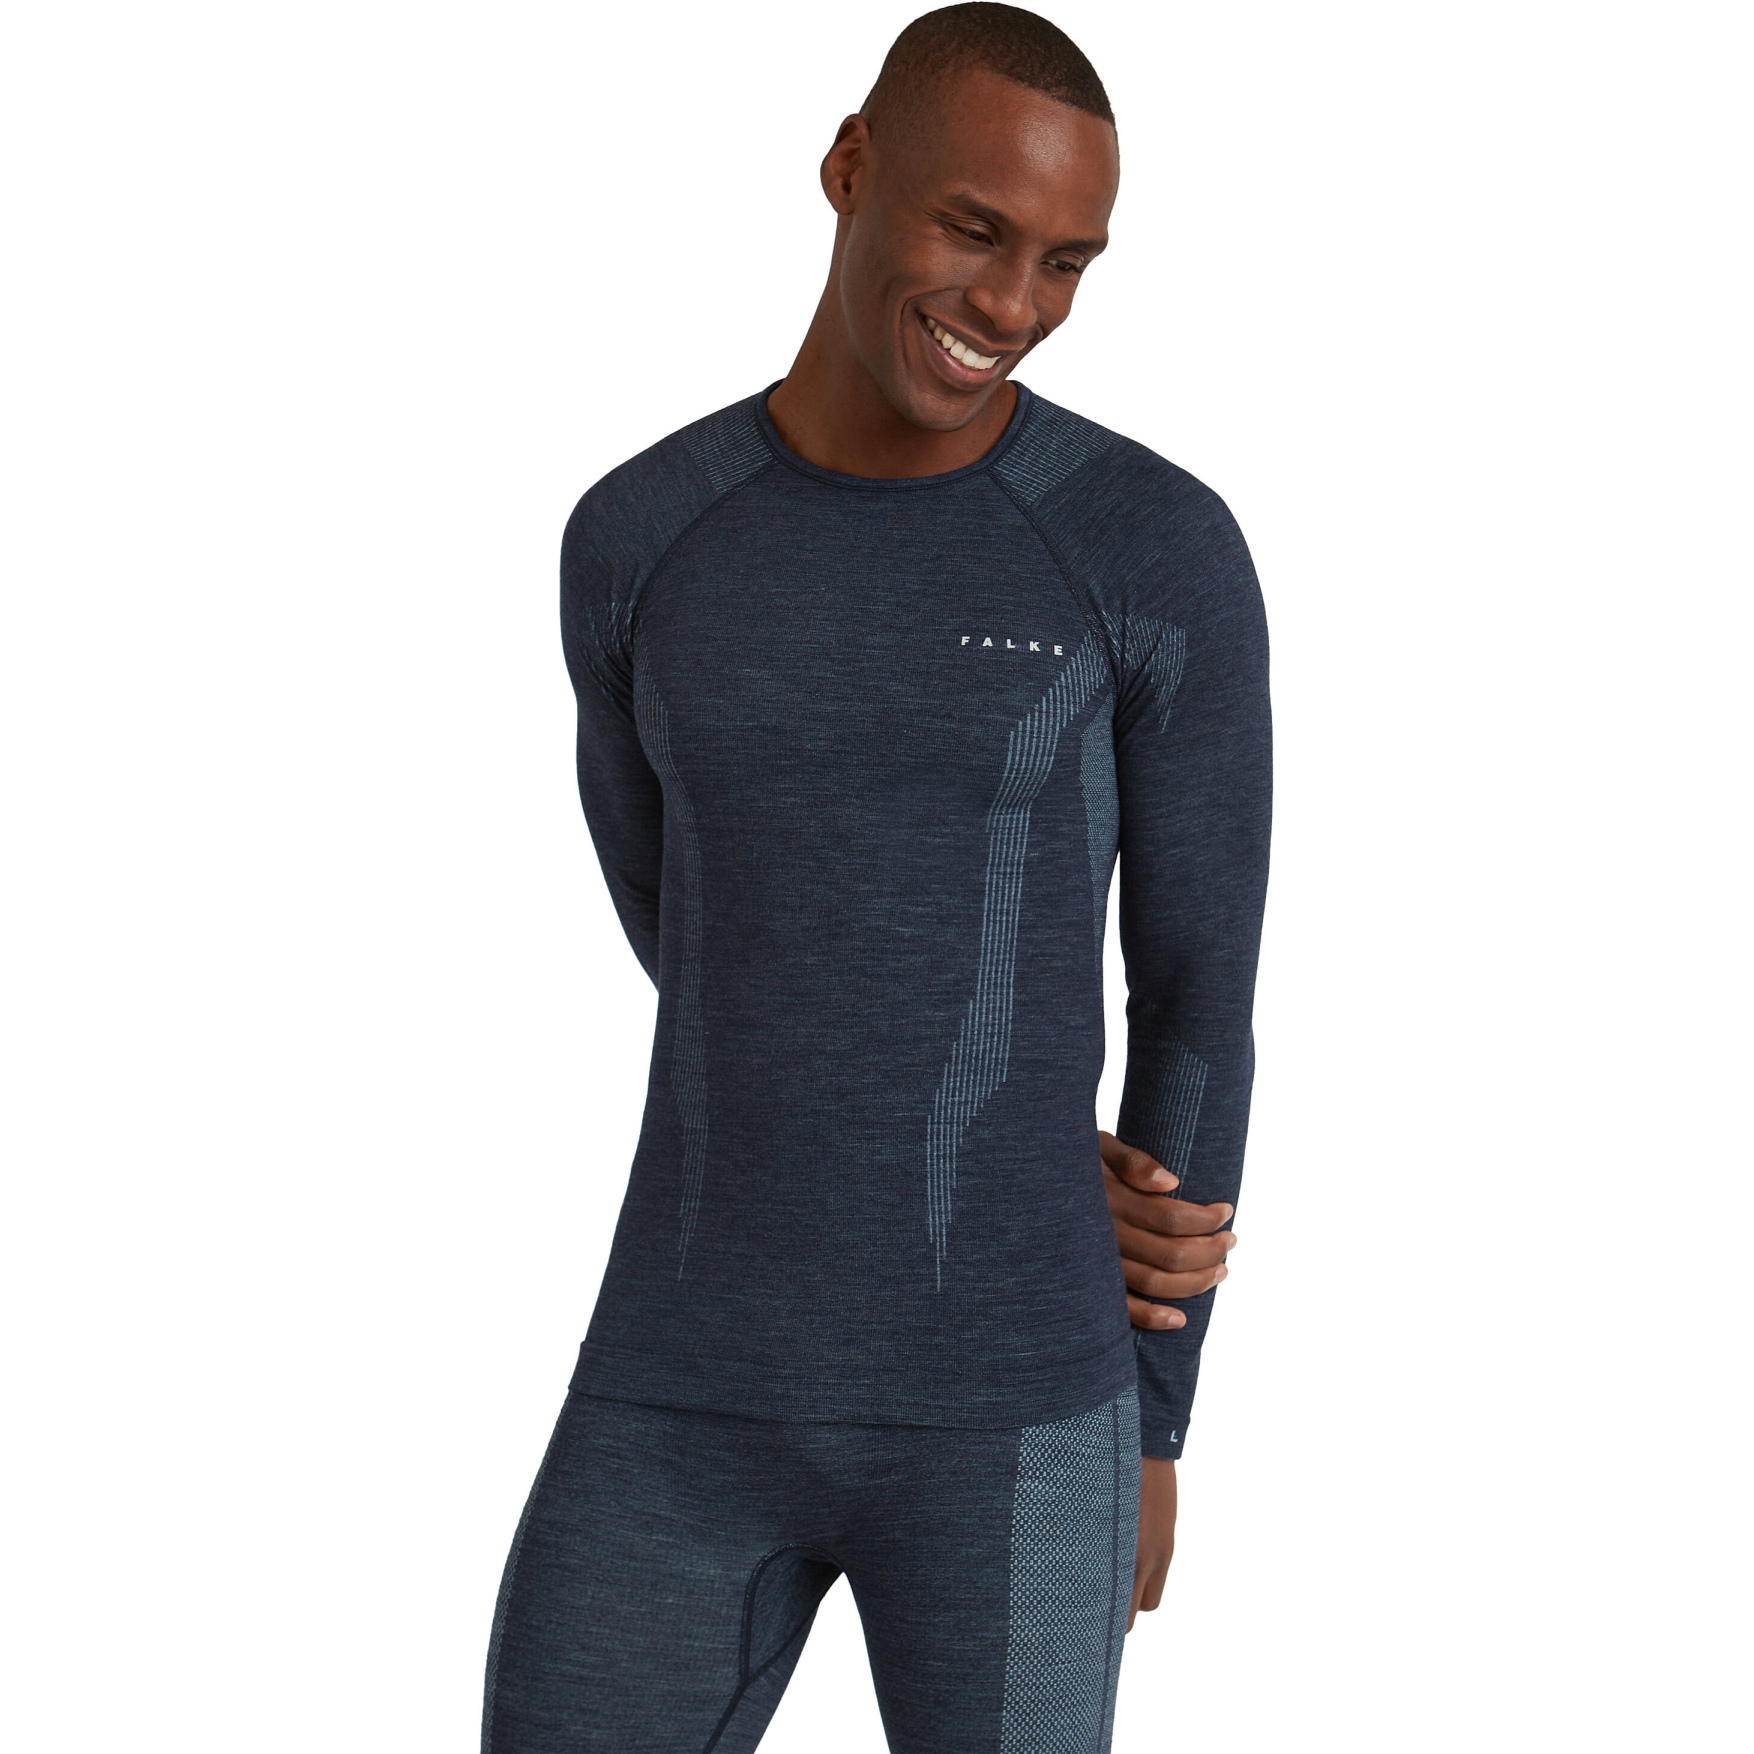 Picture of Falke Wool-Tech Longsleeve Shirt Men - space blue 6116